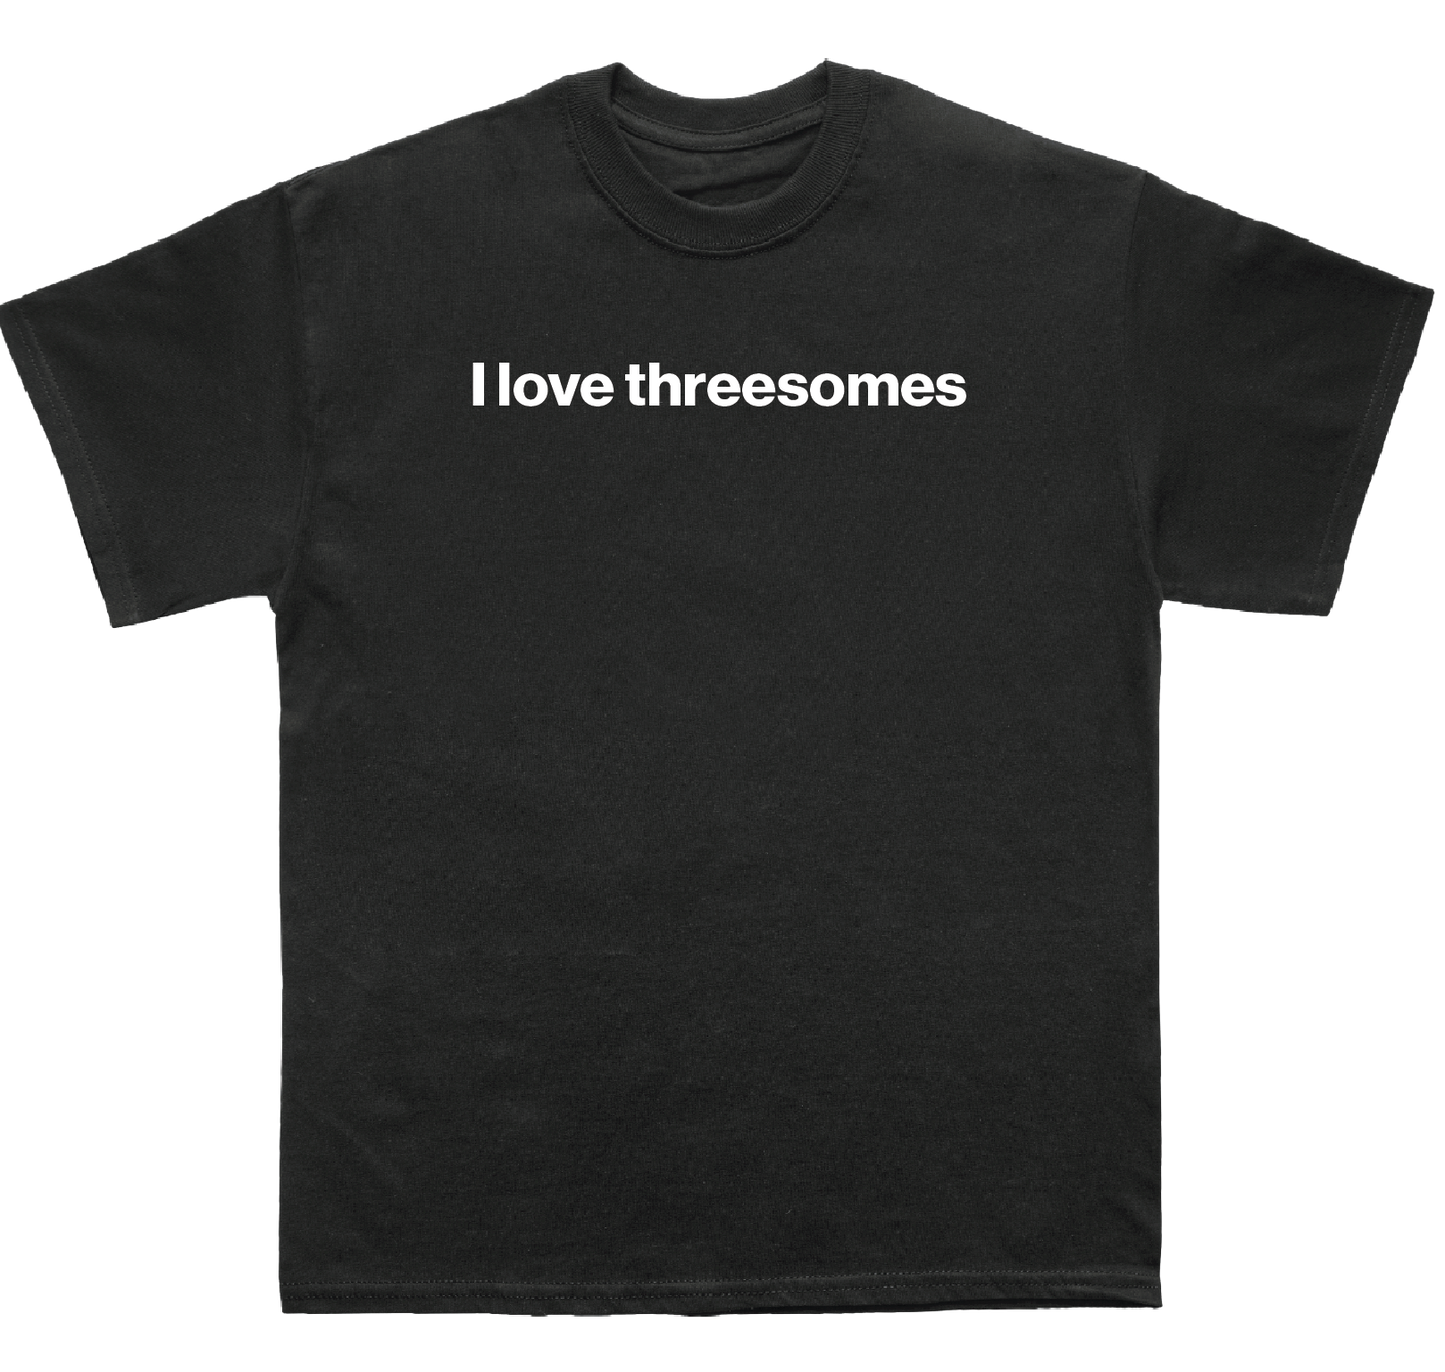 I love threesomes shirt